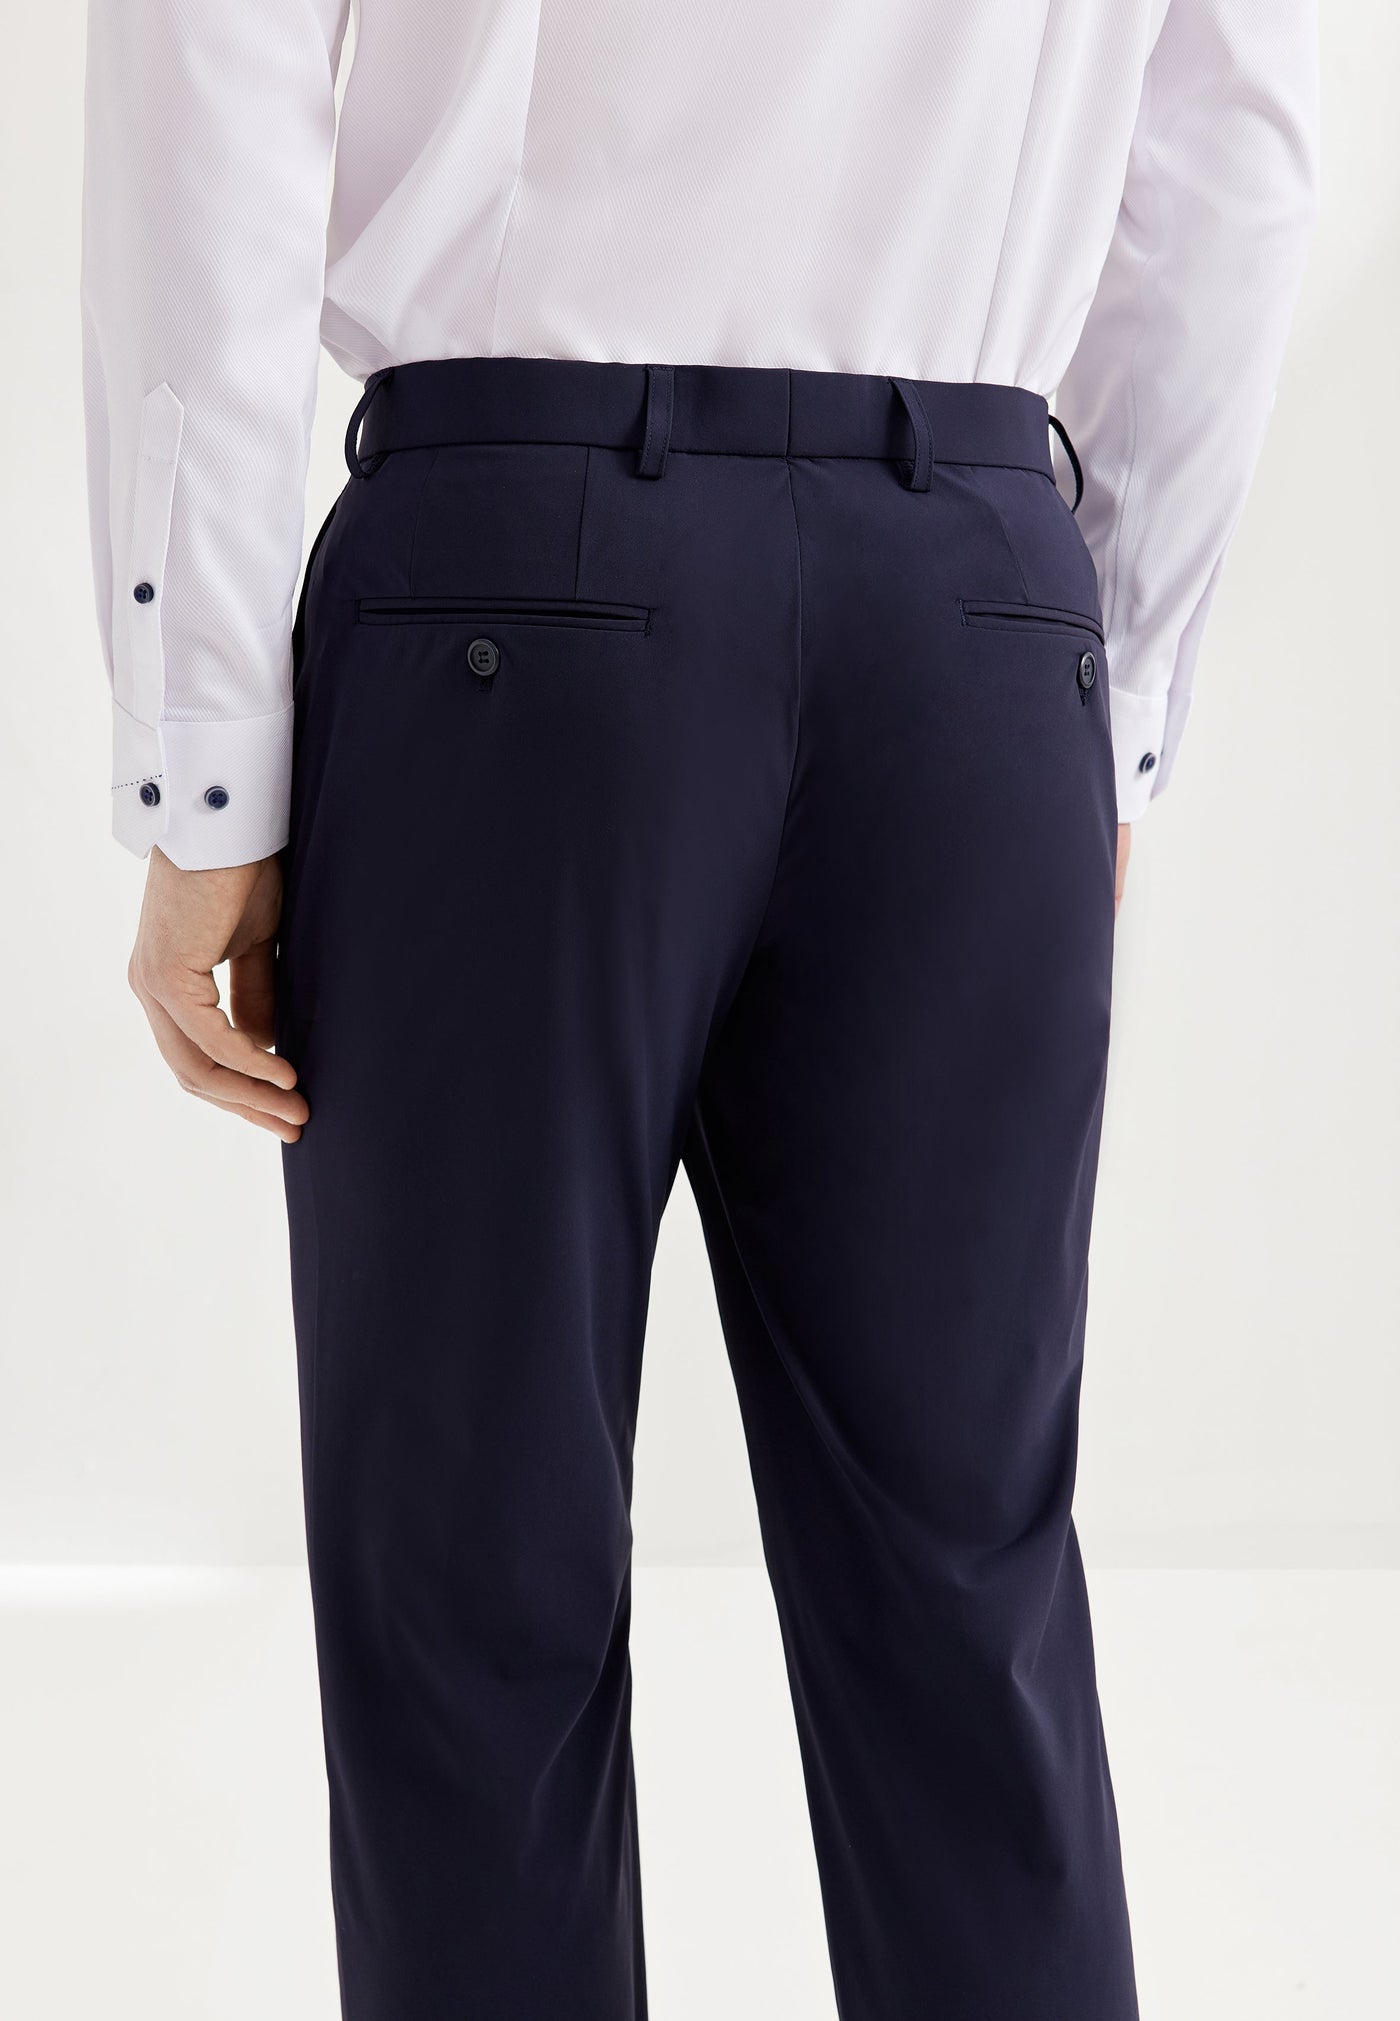 กางเกงขายาวแบบทางการสำหรับผู้ชาย Smart Fit